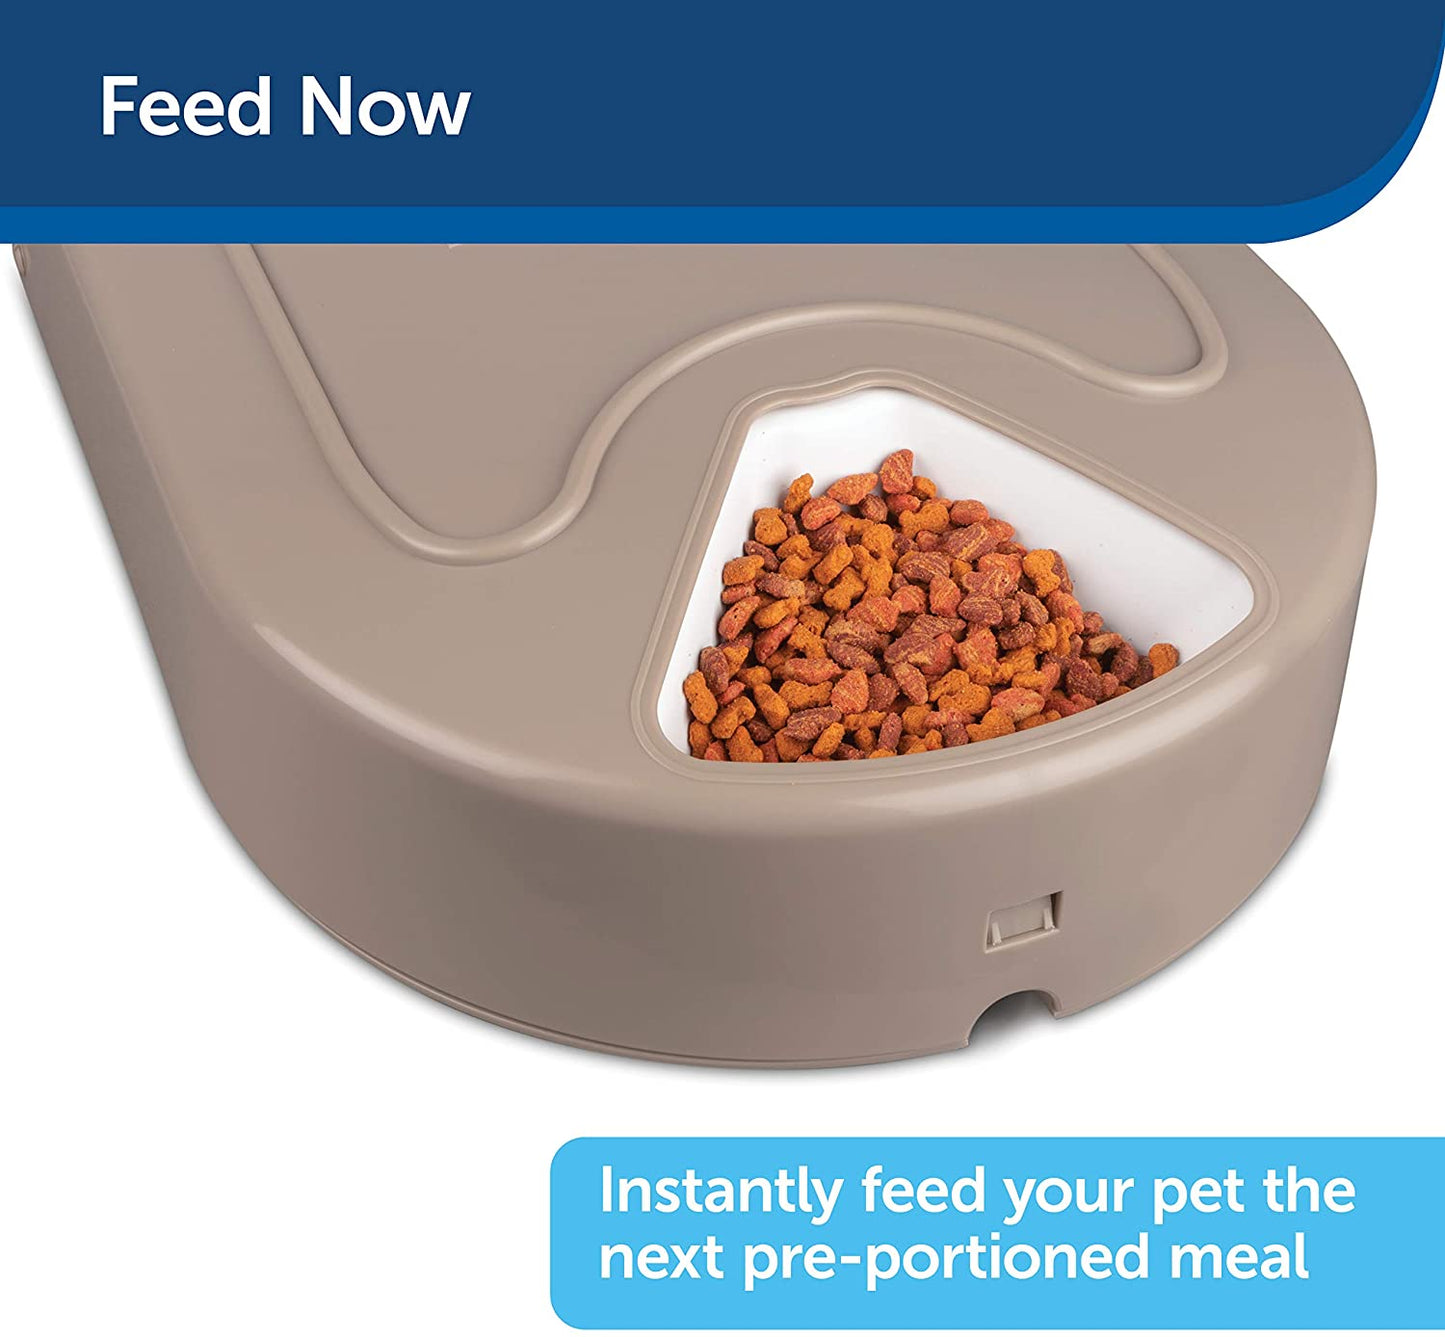 PetSafe - Comedouro para animais de estimação 5 refeições, automático